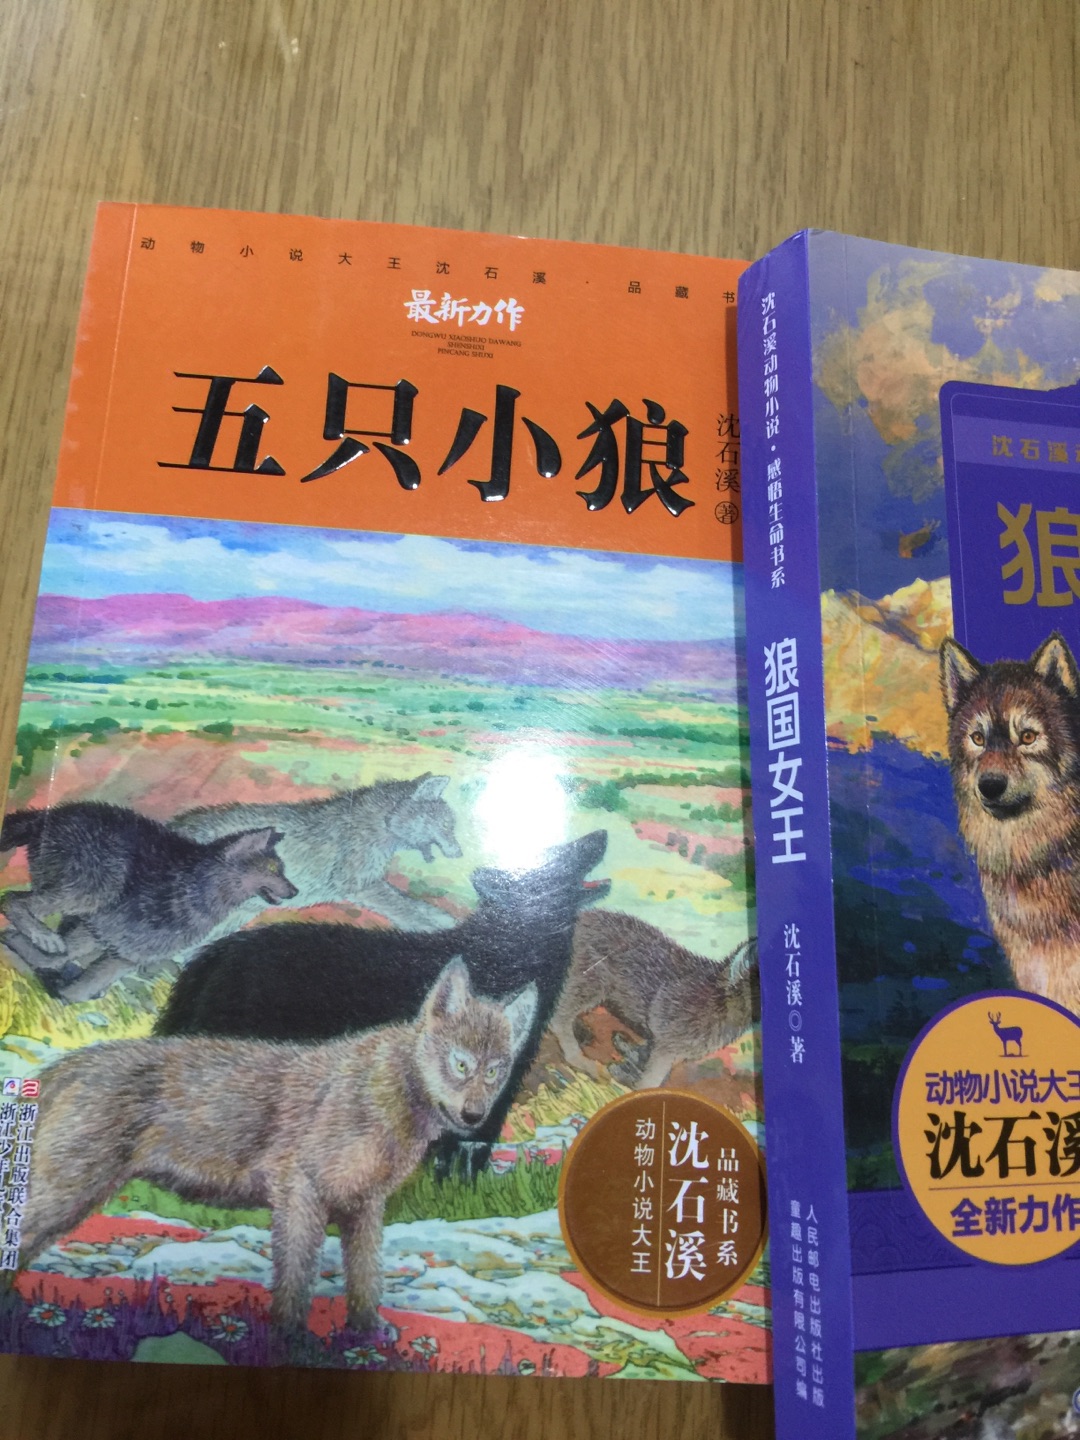 沈石溪的动物小说都在逐步购买中，喜欢阅读的书籍。